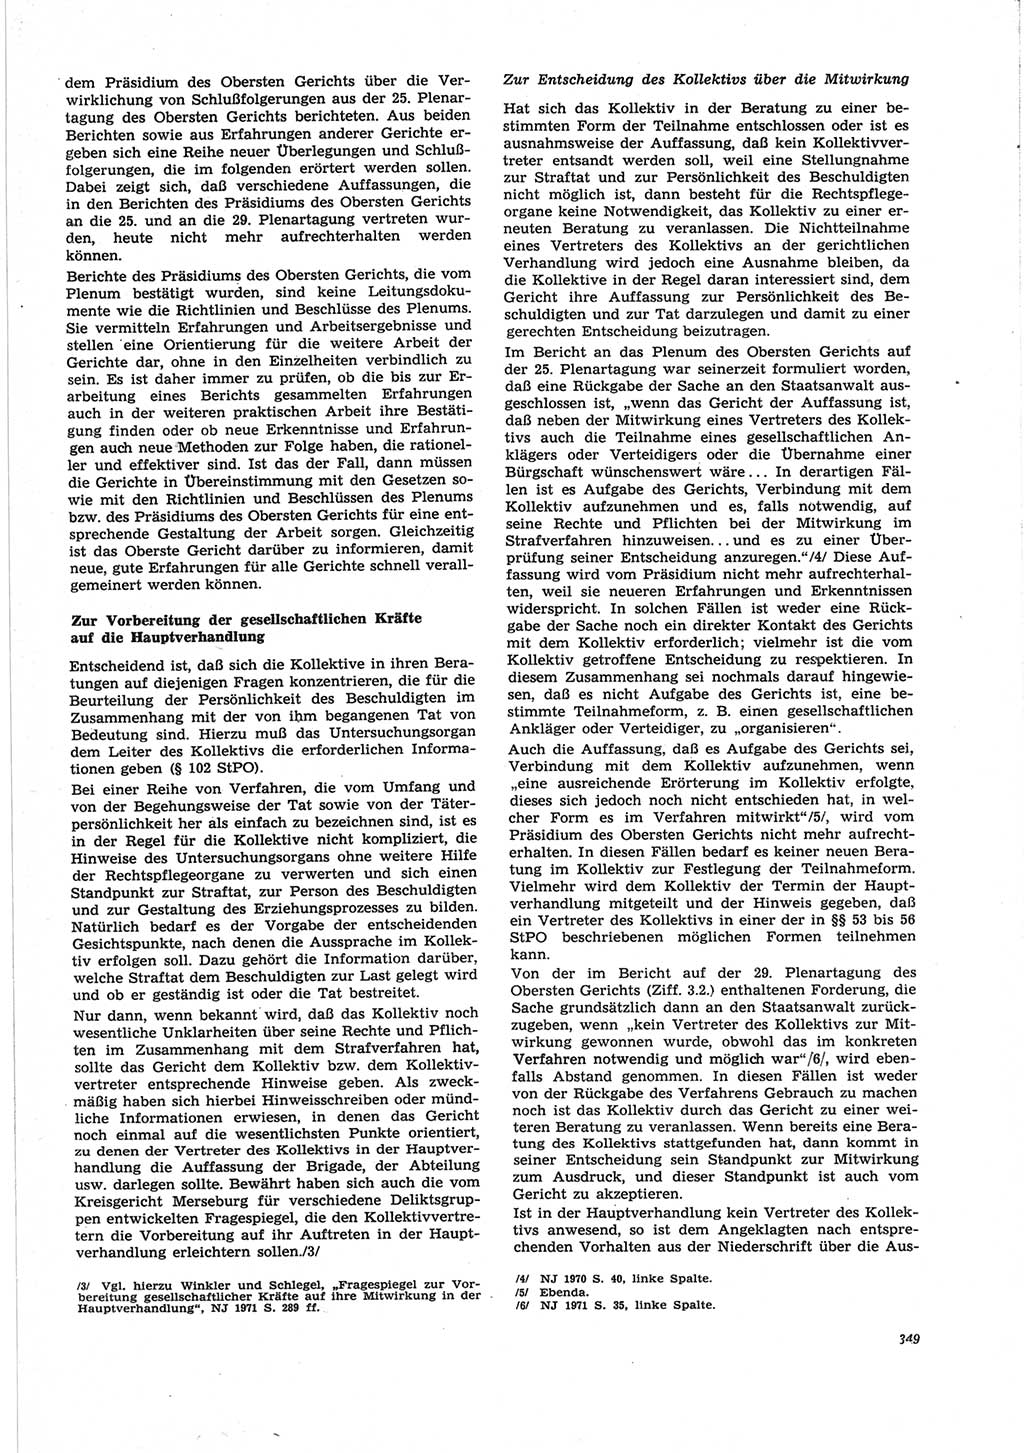 Neue Justiz (NJ), Zeitschrift für Recht und Rechtswissenschaft [Deutsche Demokratische Republik (DDR)], 25. Jahrgang 1971, Seite 349 (NJ DDR 1971, S. 349)